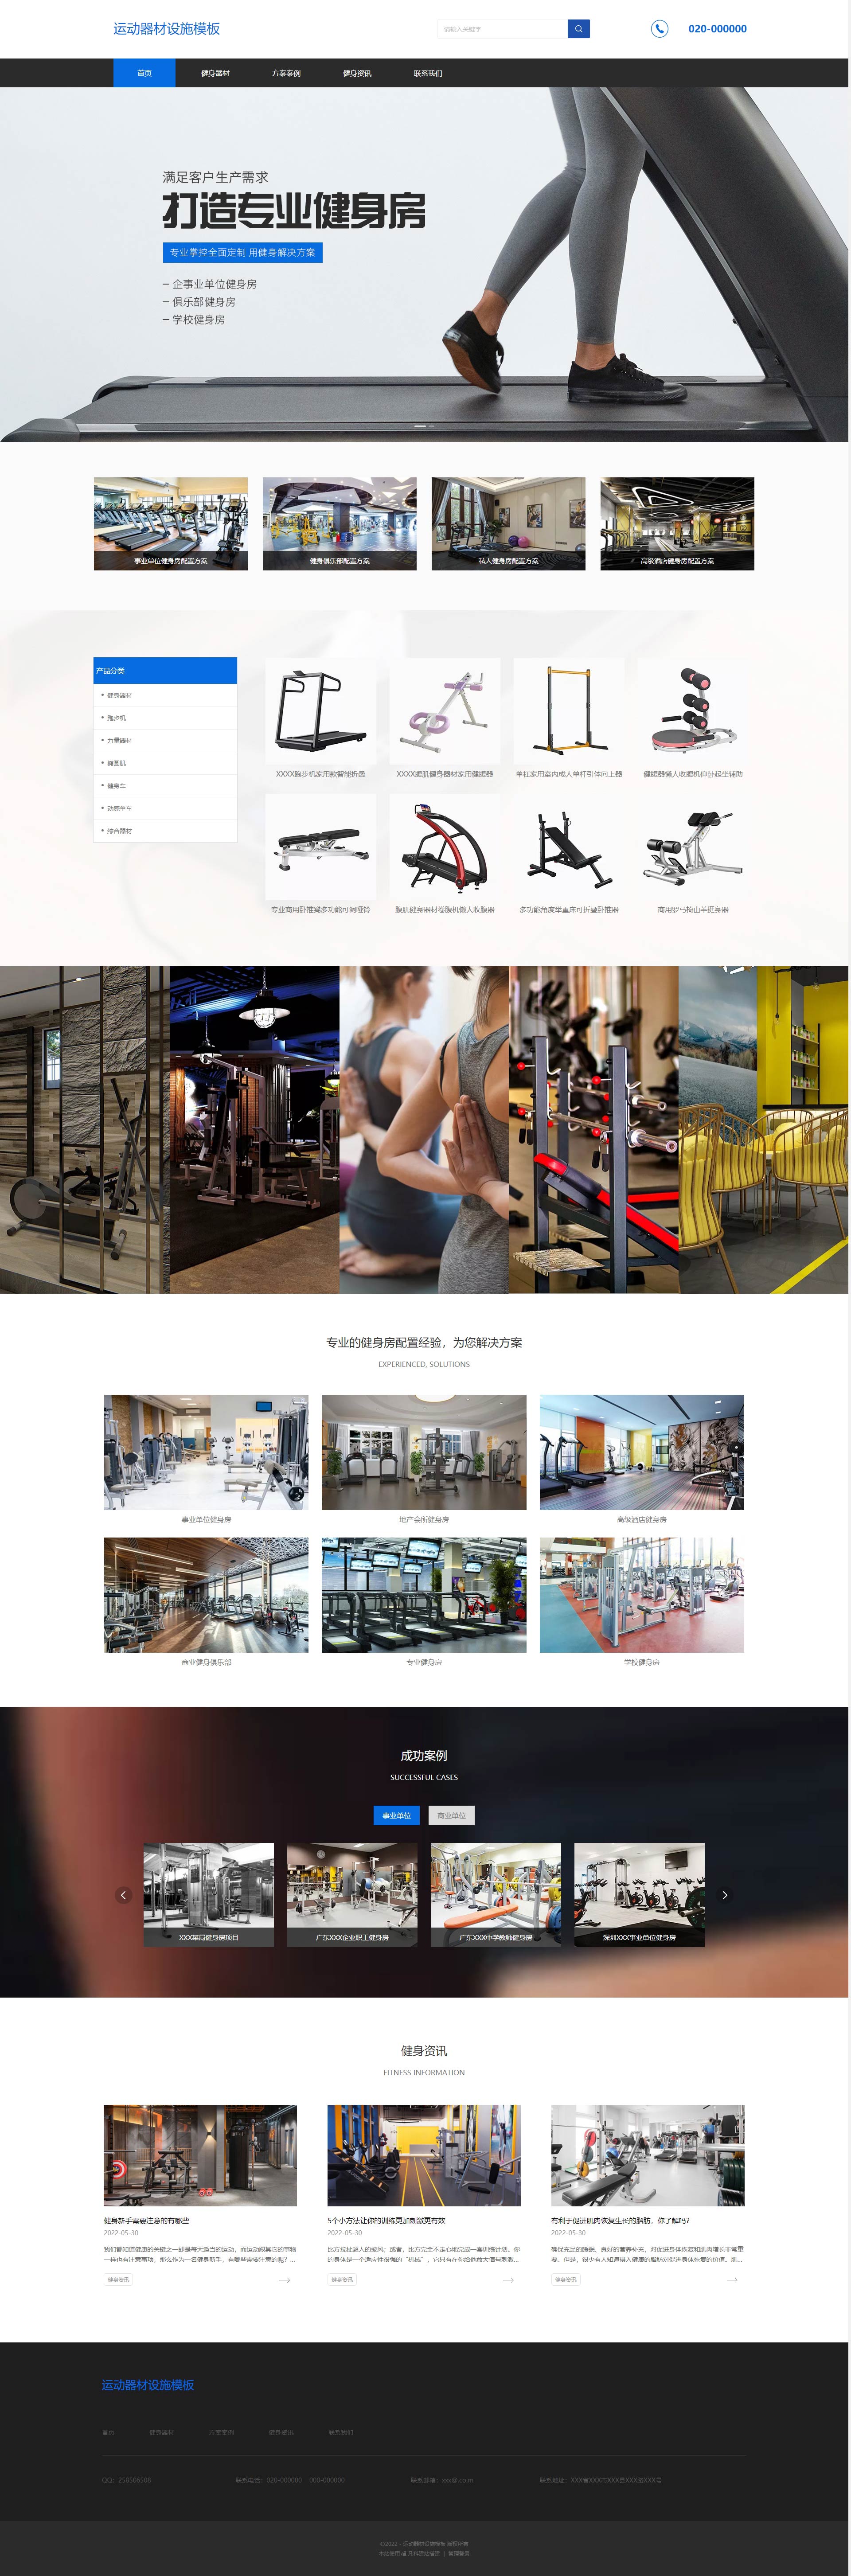 专业运动器材设施企业网站模板